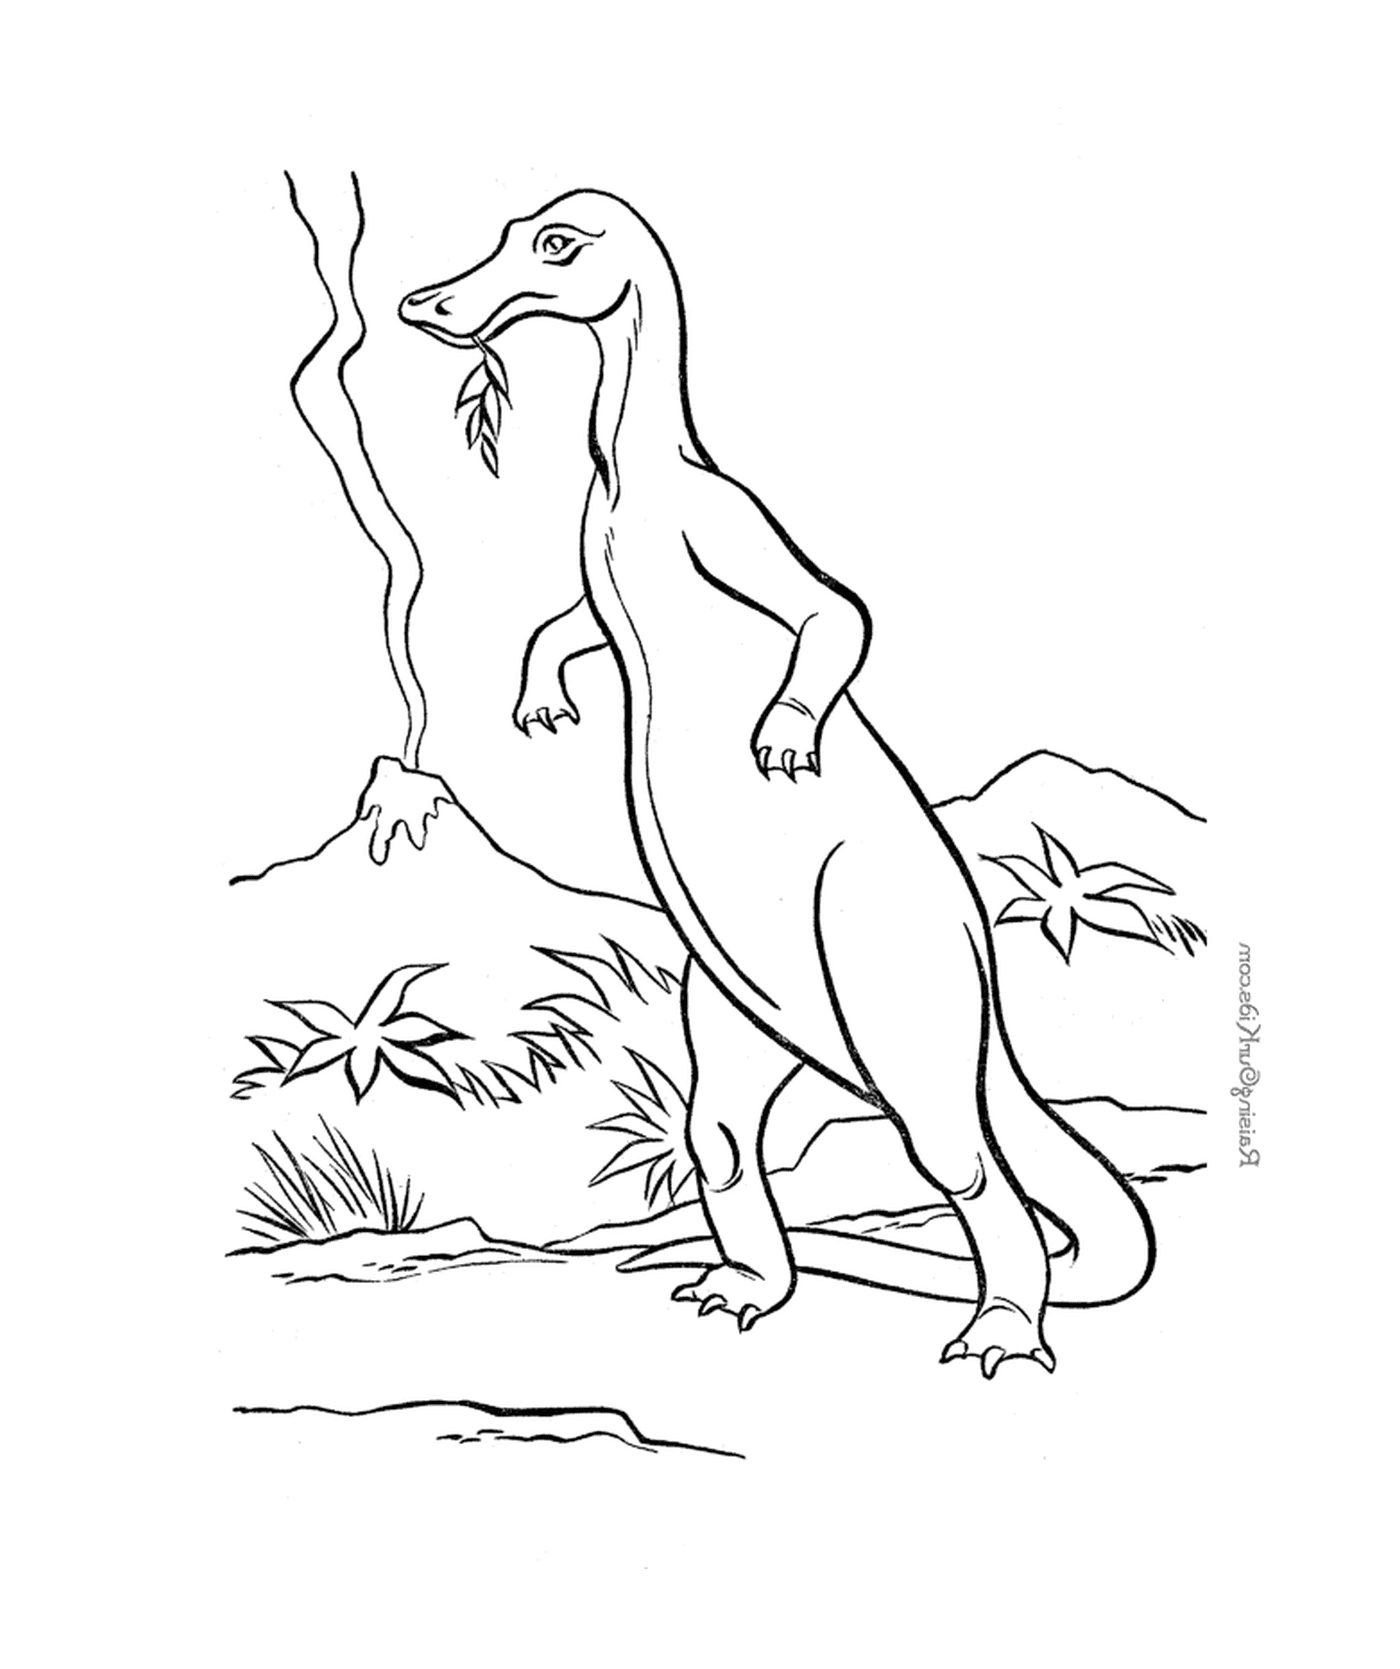  Динозавр стоит в зелёной траве 